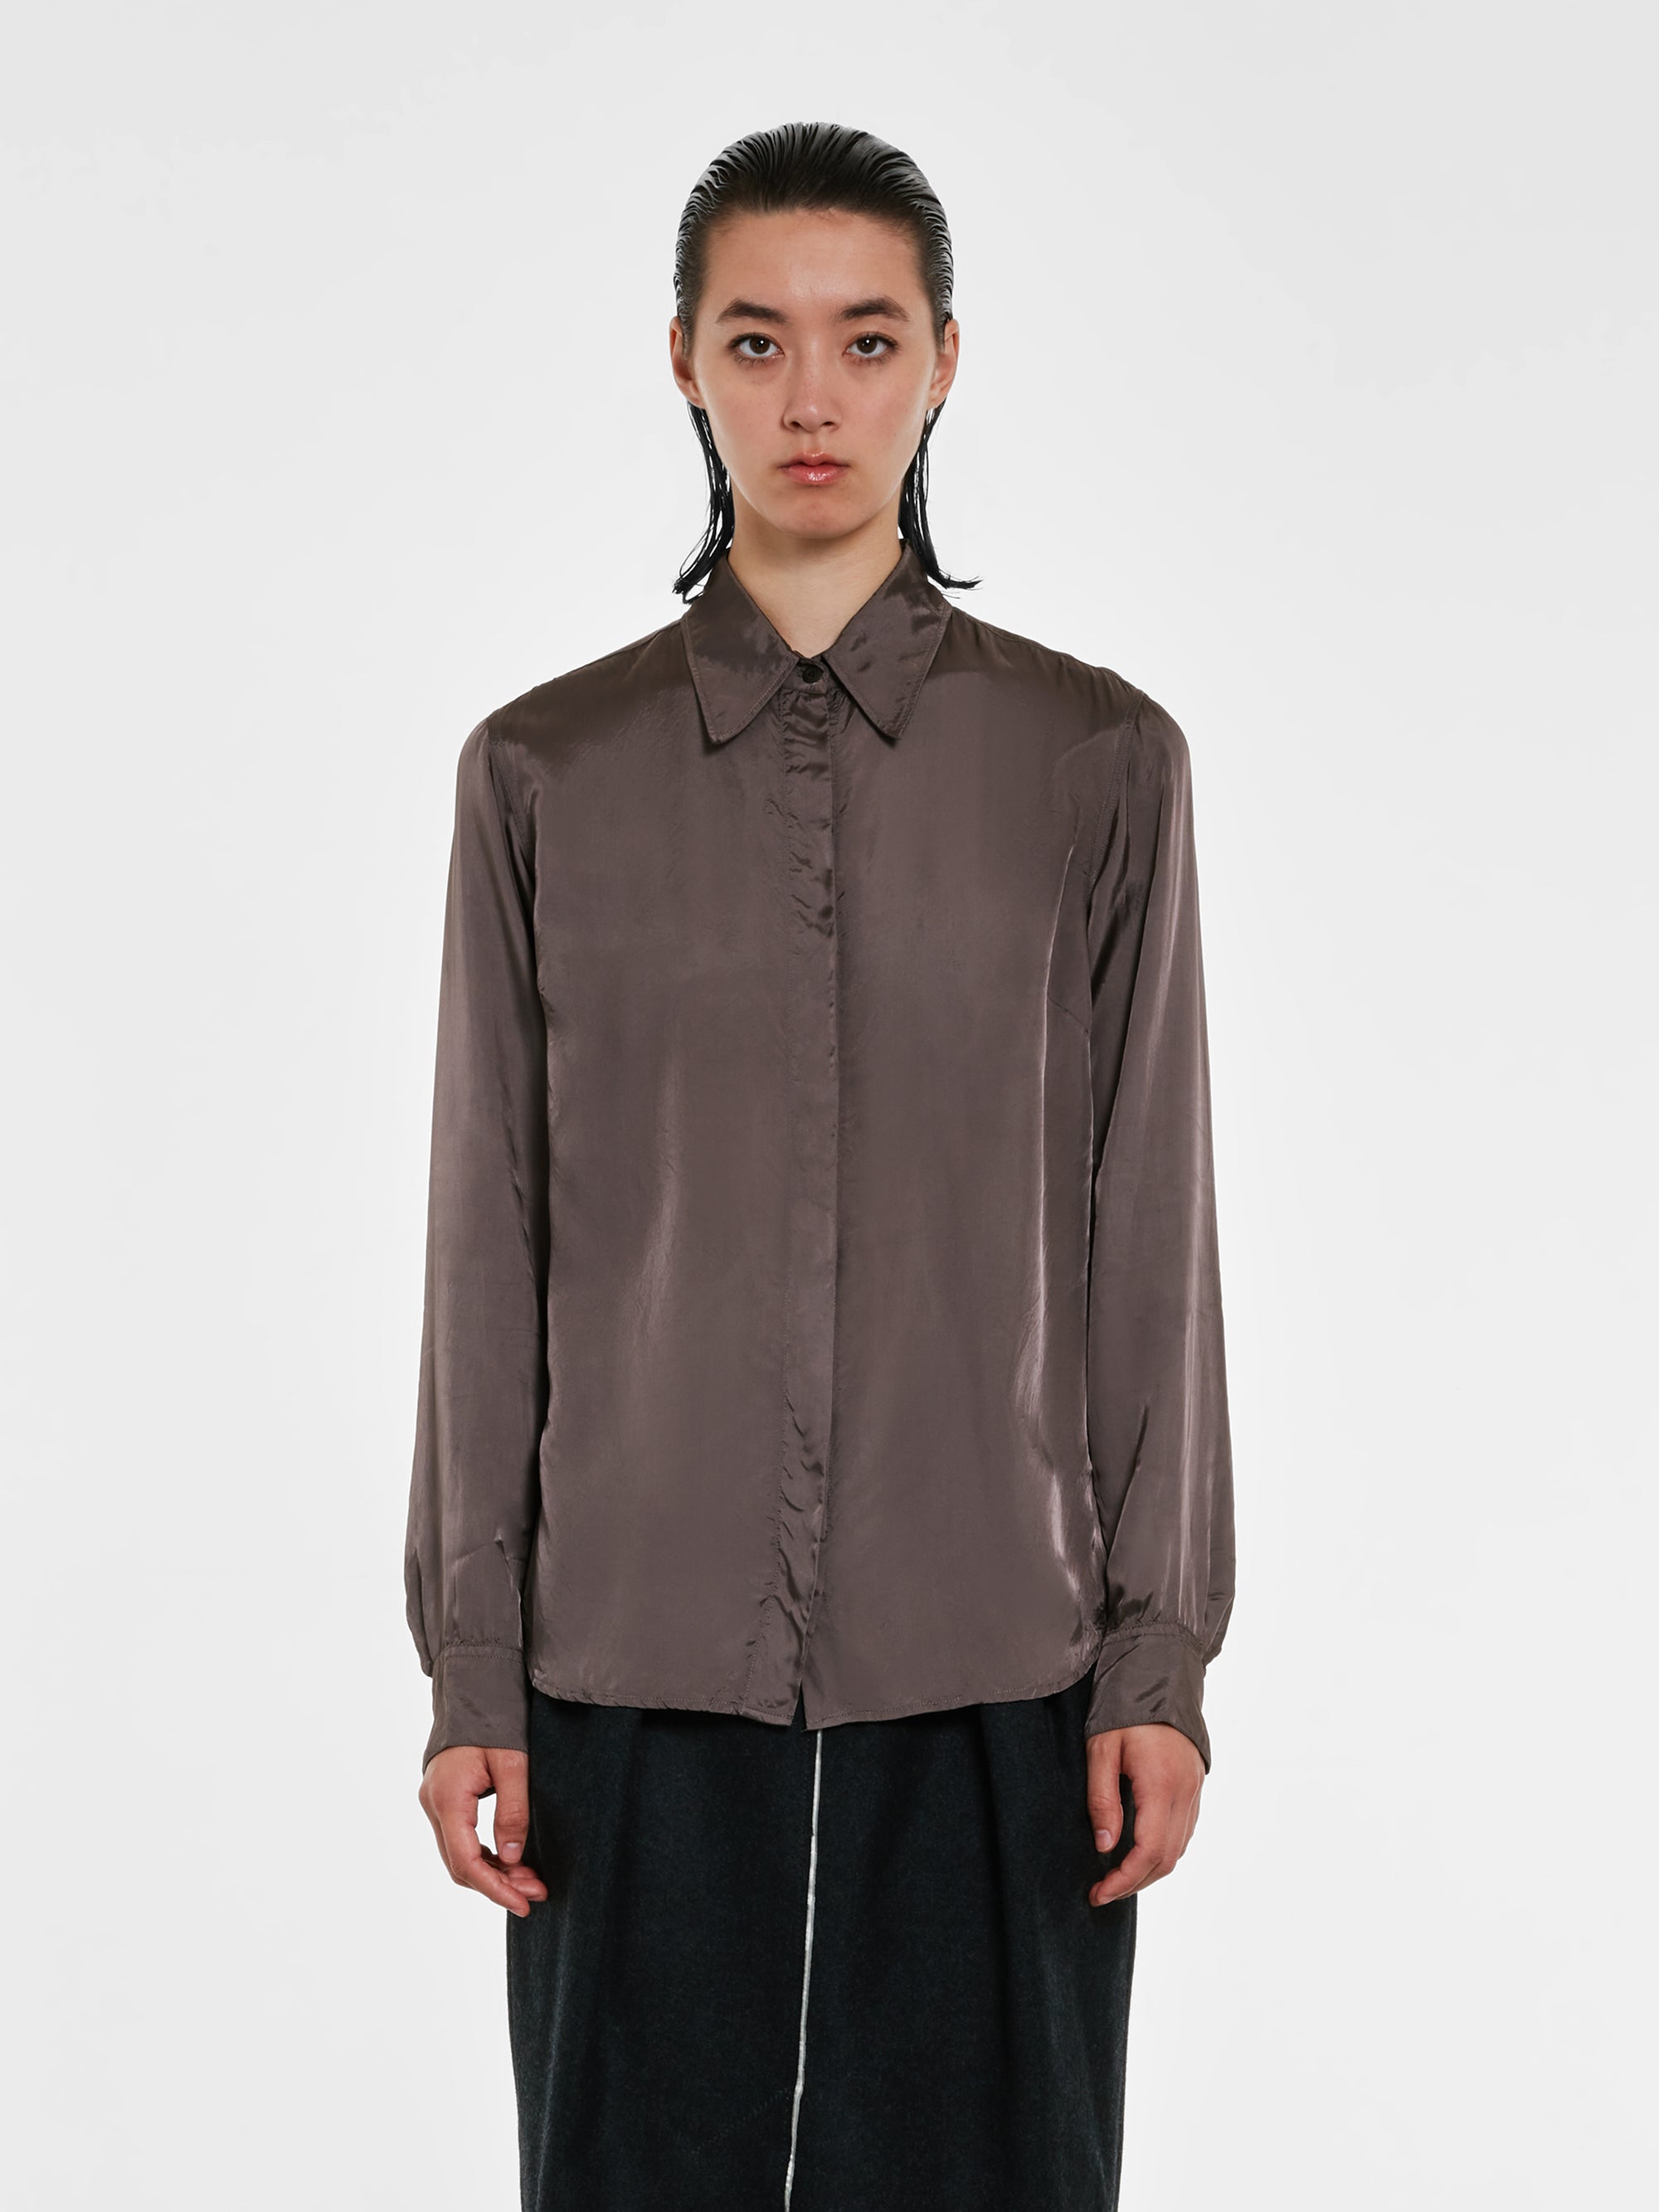 Dries Van Noten - Women's Silk Shirt - (Grey) view 2